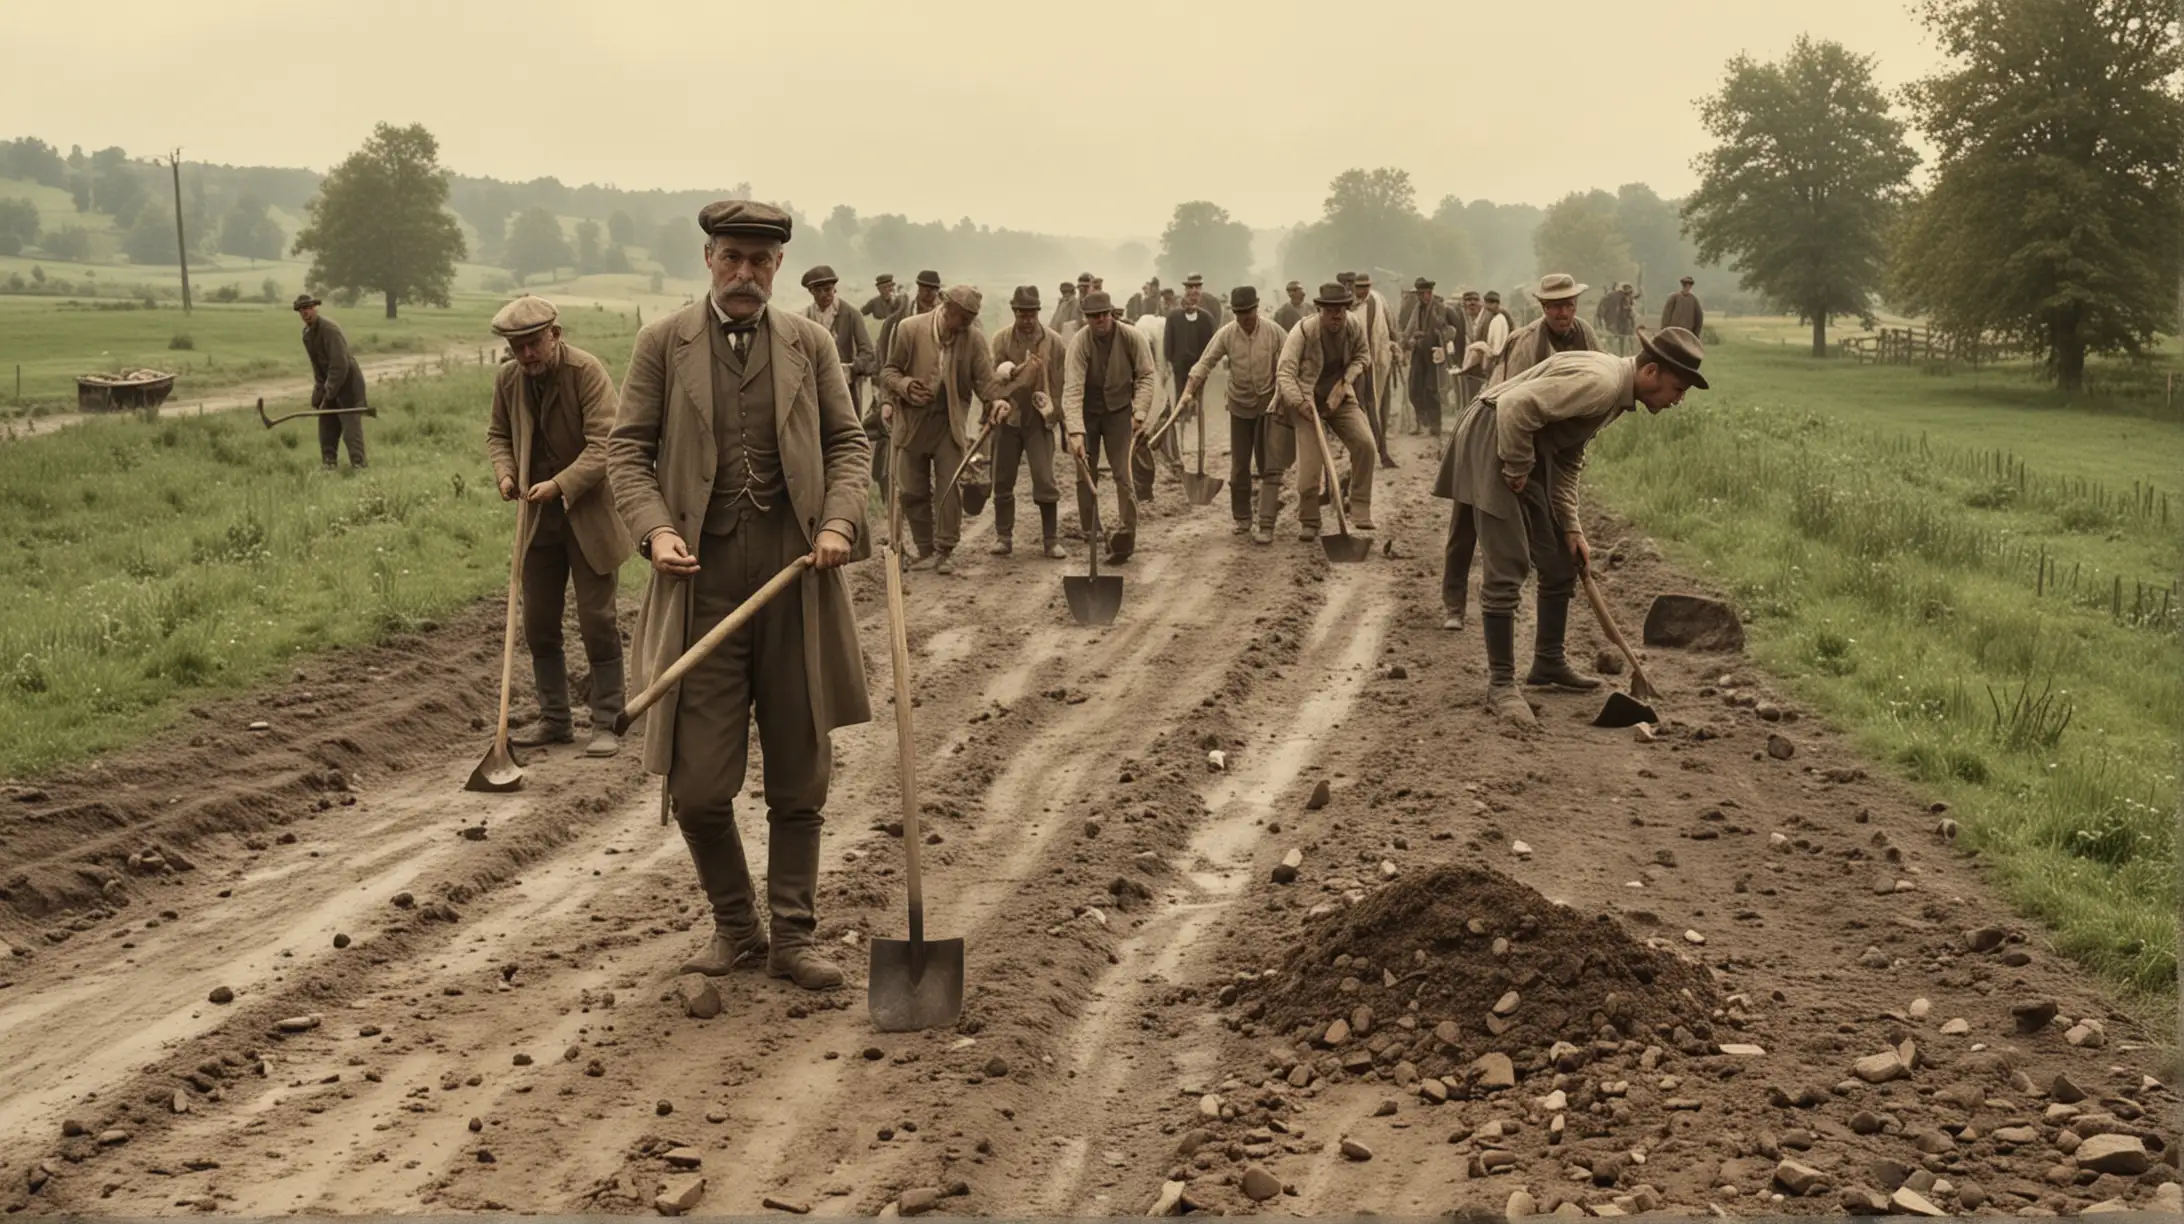 Anno 1910, 20 mannen die met schoppen en houwelen een weg opbreken, in een lndelijk landschap.